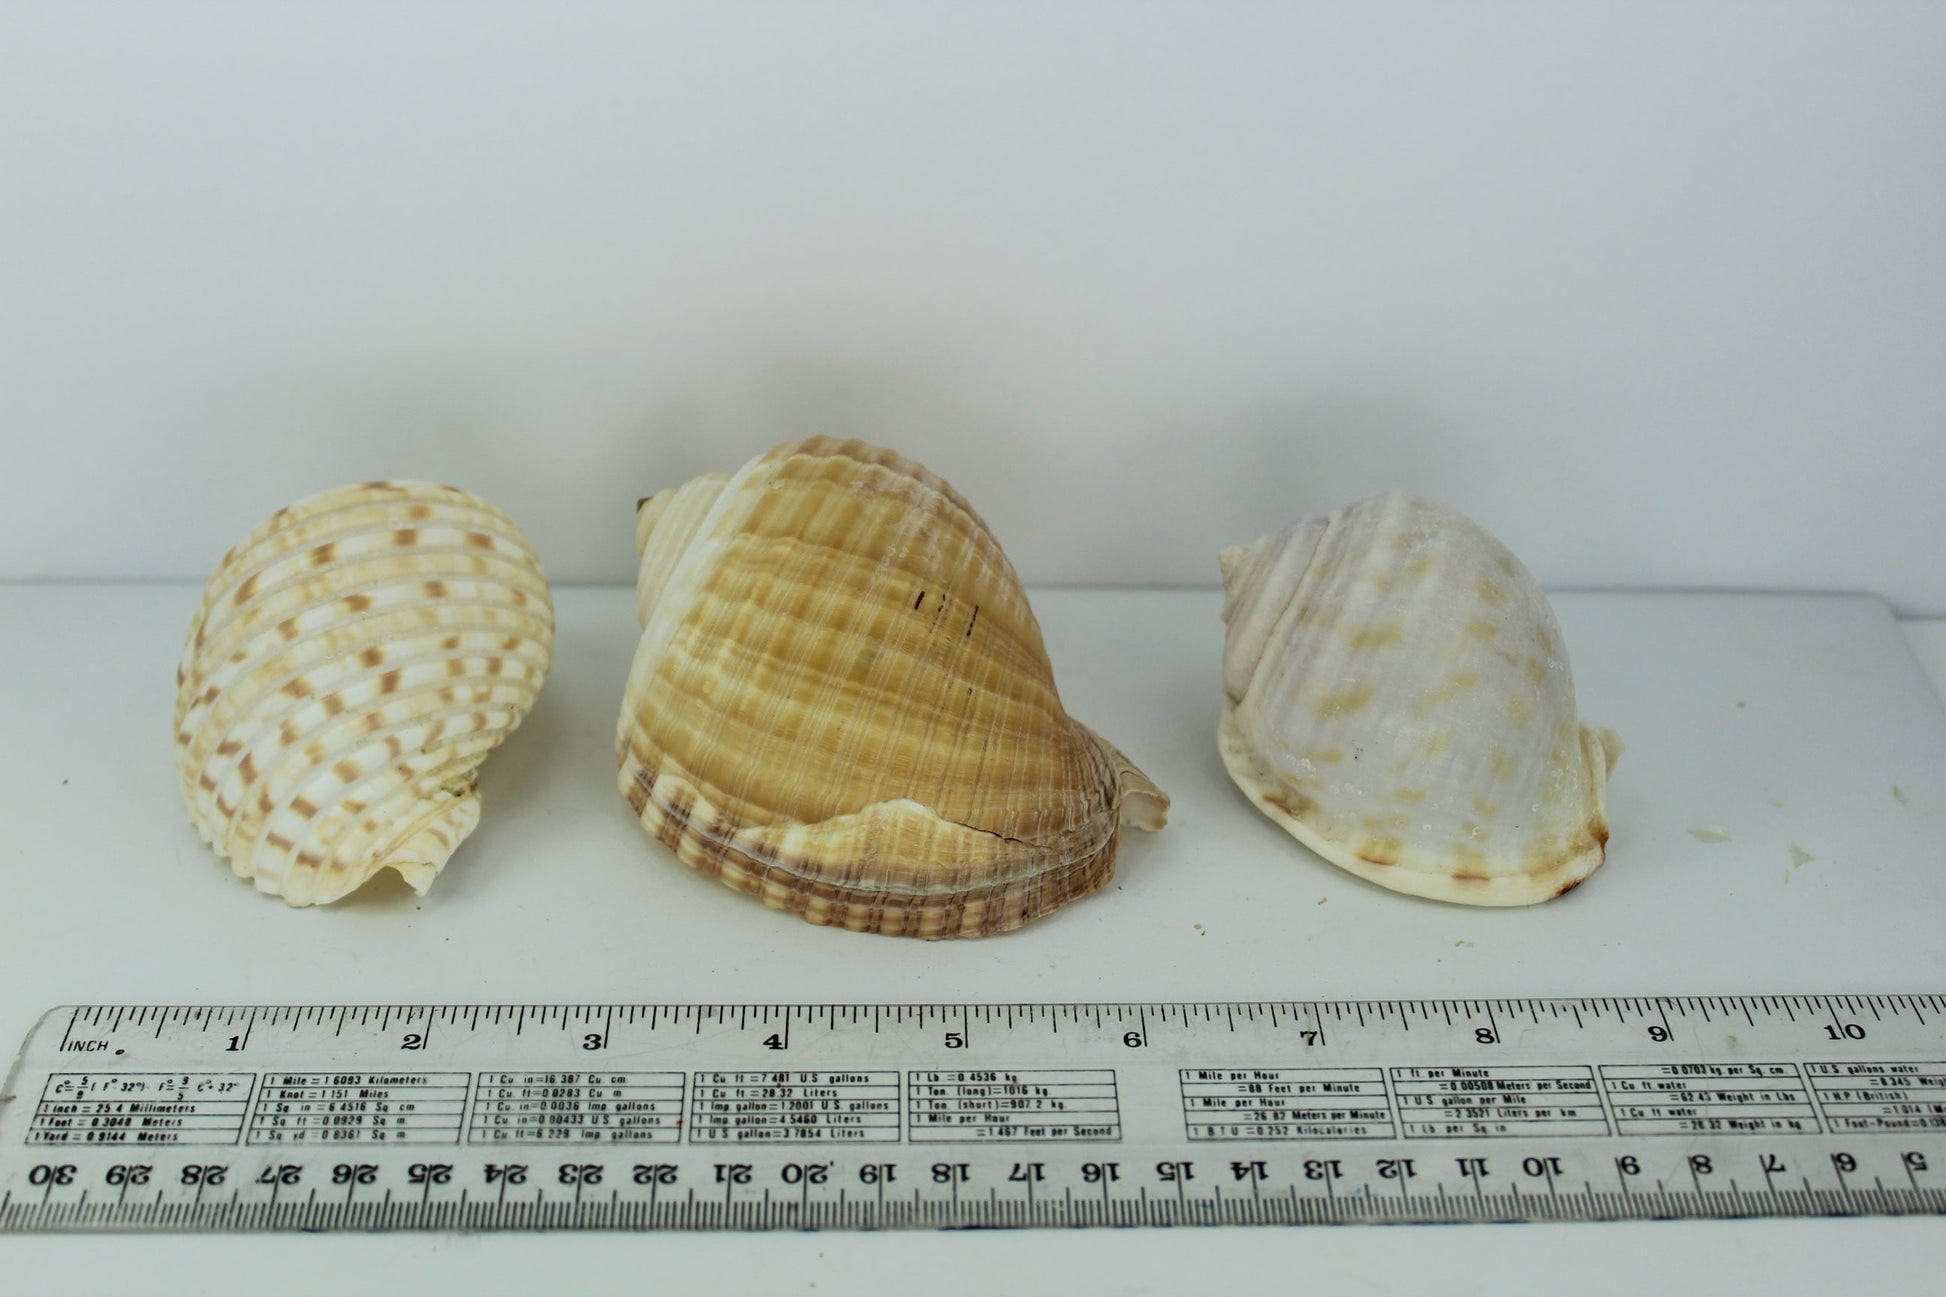 Florida 3 Shells Vintage Tuns Bonnet Estate Collection Shell Art Collectibles Wreaths Aquarium